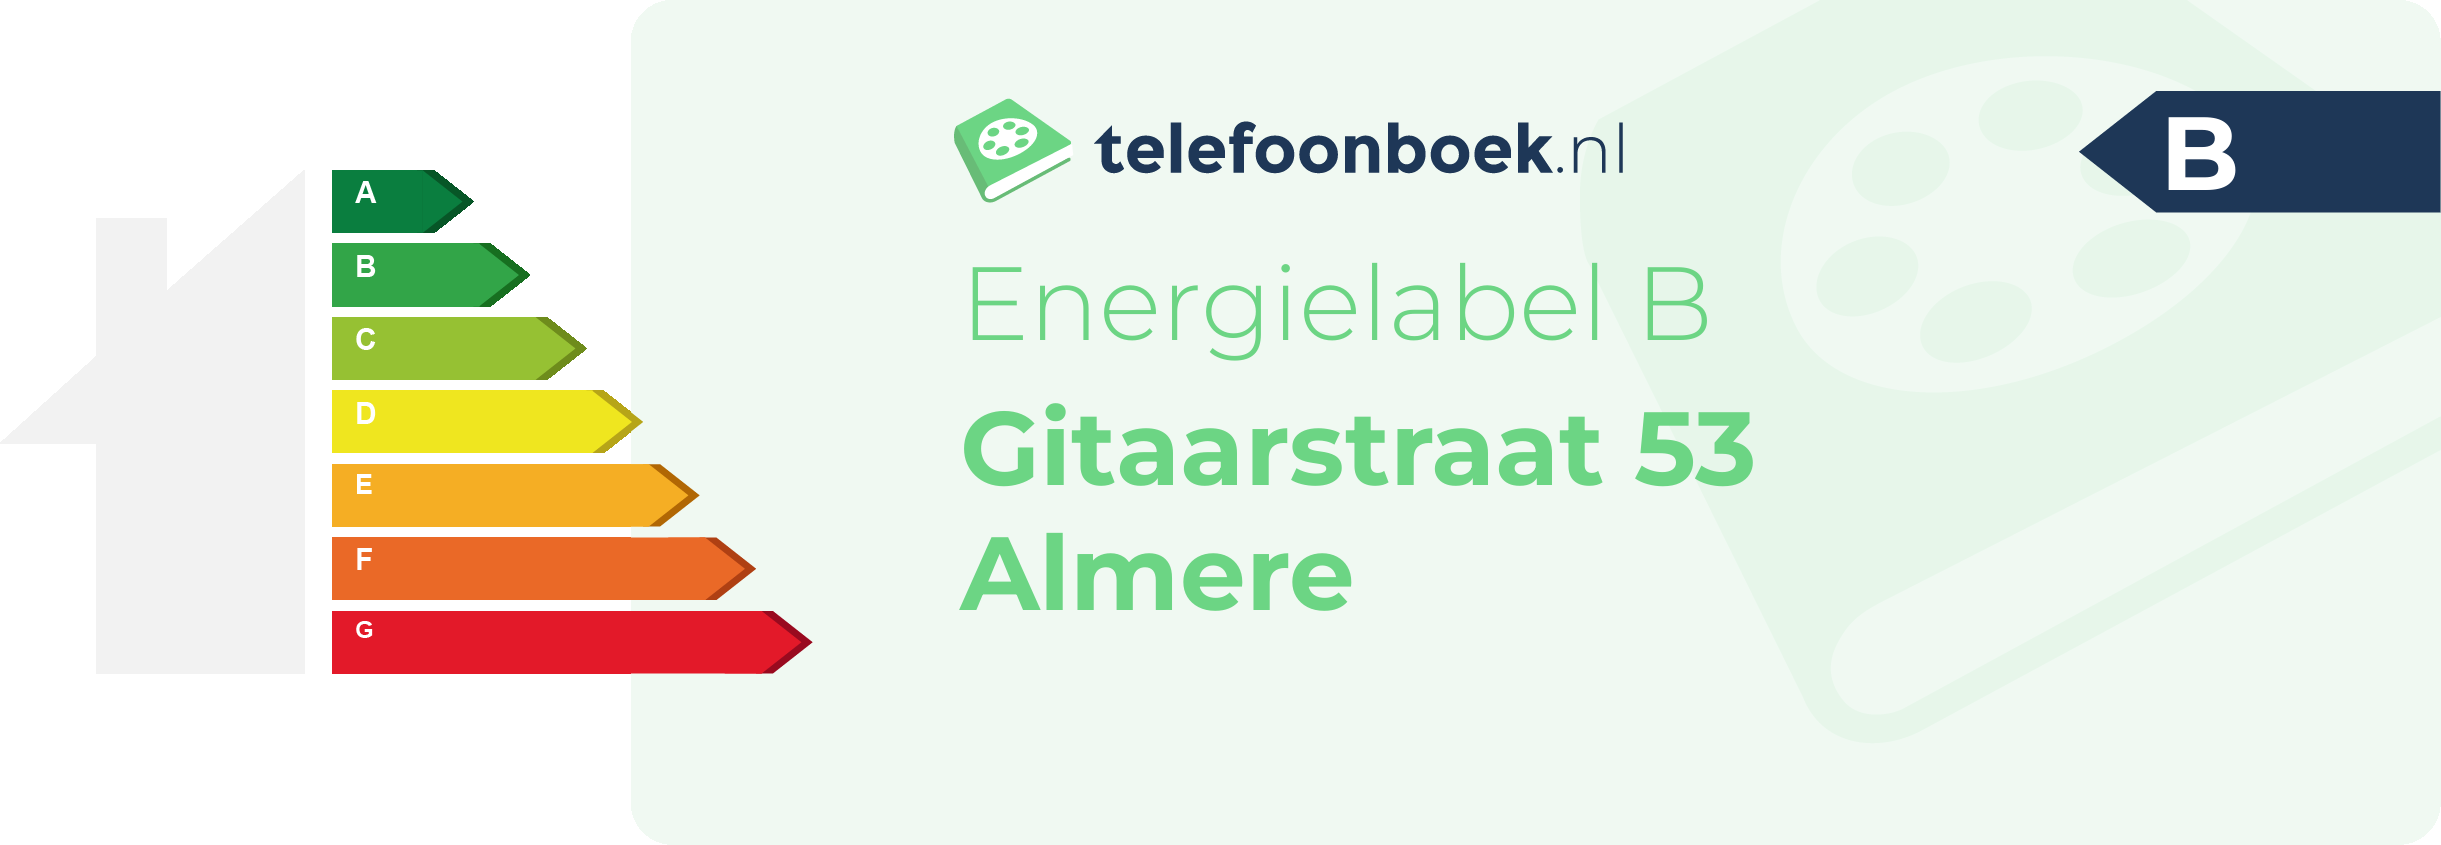 Energielabel Gitaarstraat 53 Almere